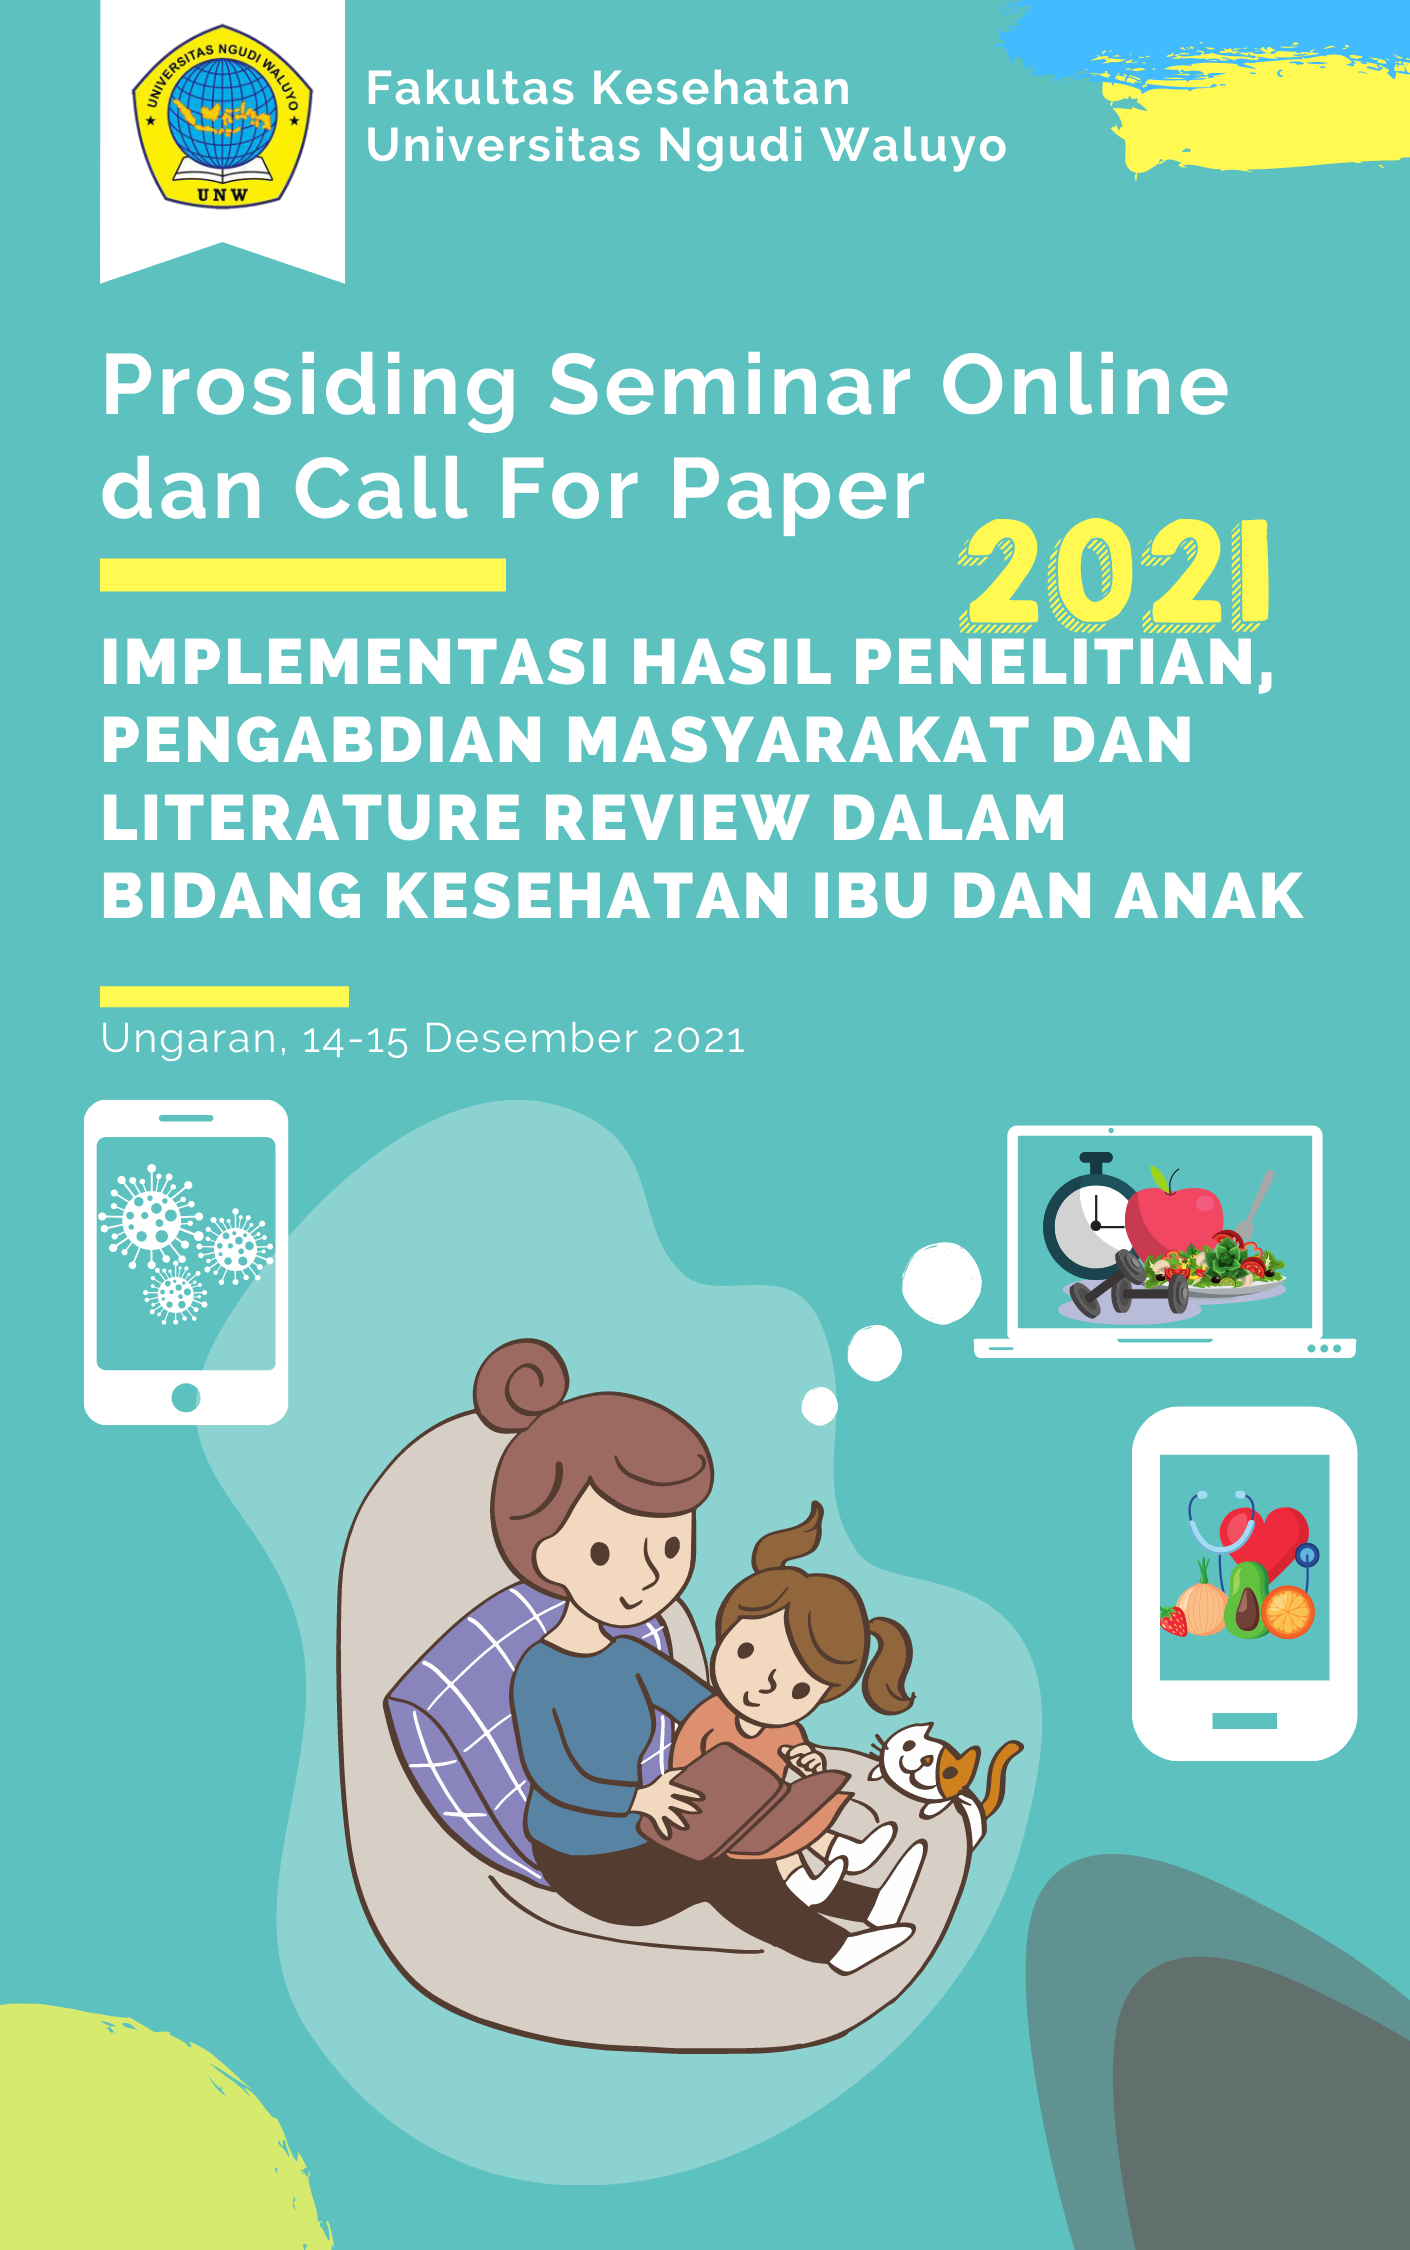 					View 2021: Implementasi Hasil Penelitian, Pengabdian Masyarakat dan Literature Review dalam Bidang Kesehatan Ibu dan Anak
				